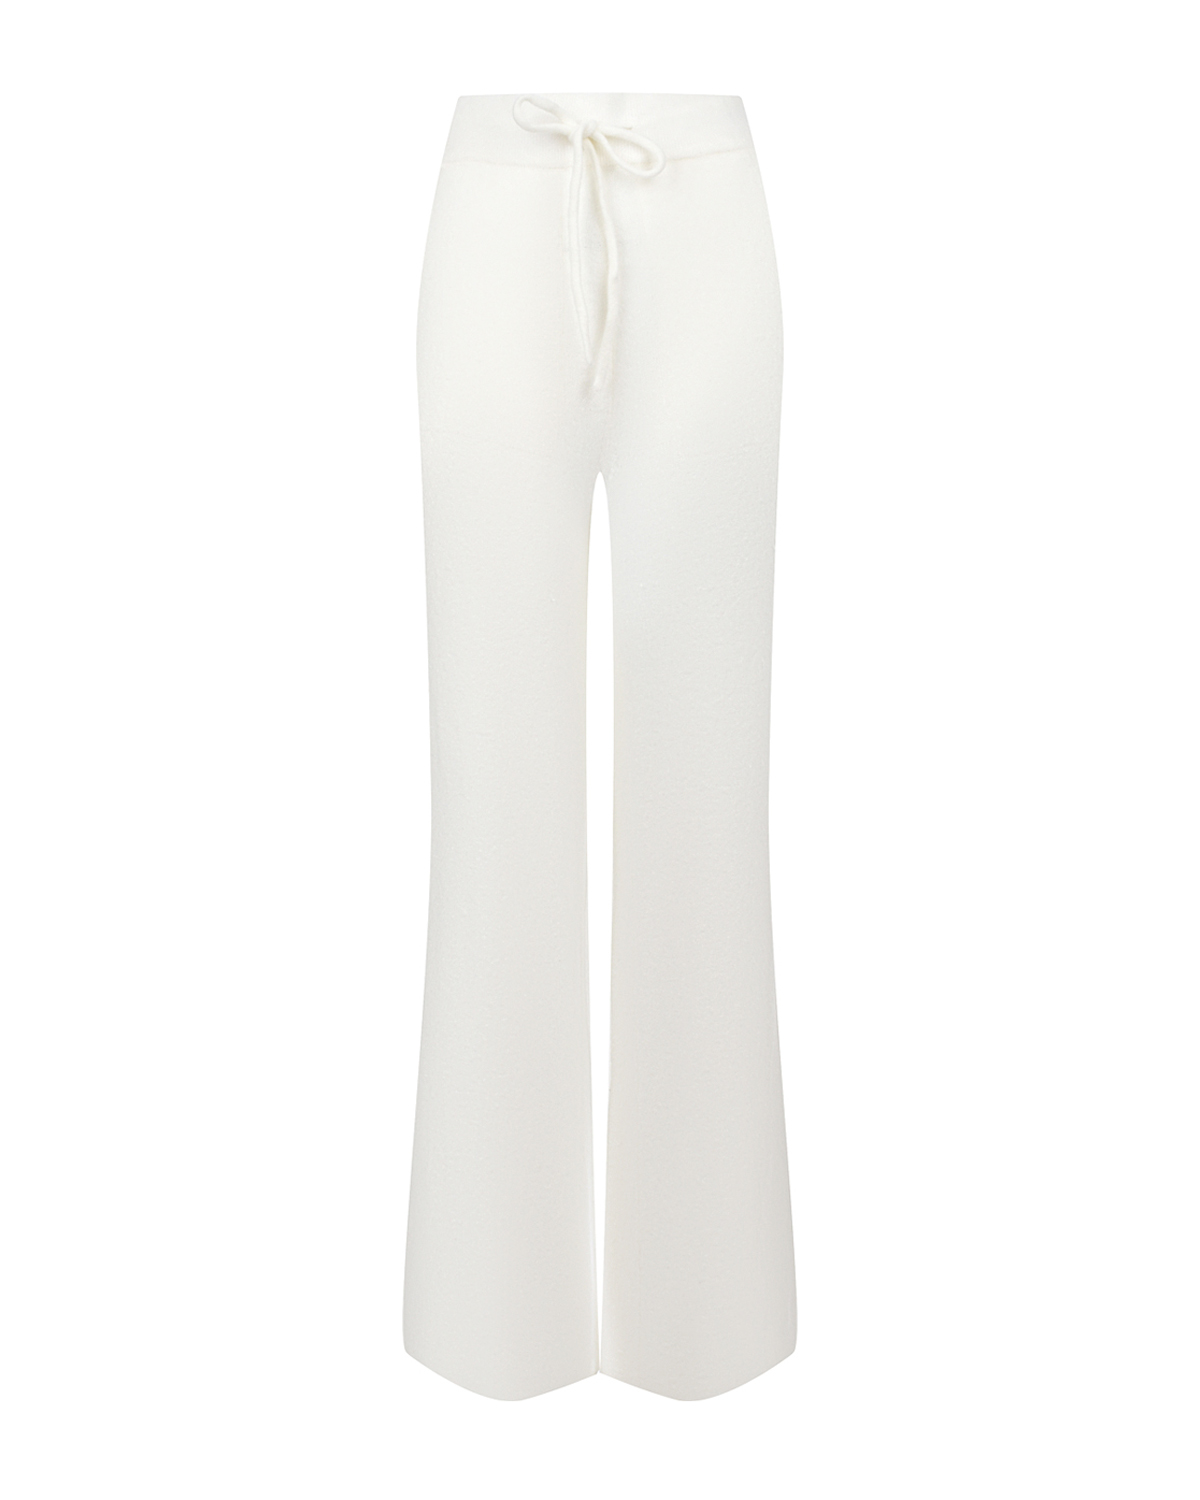 Белые трикотажные брюки Deha, размер 38, цвет белый - фото 1